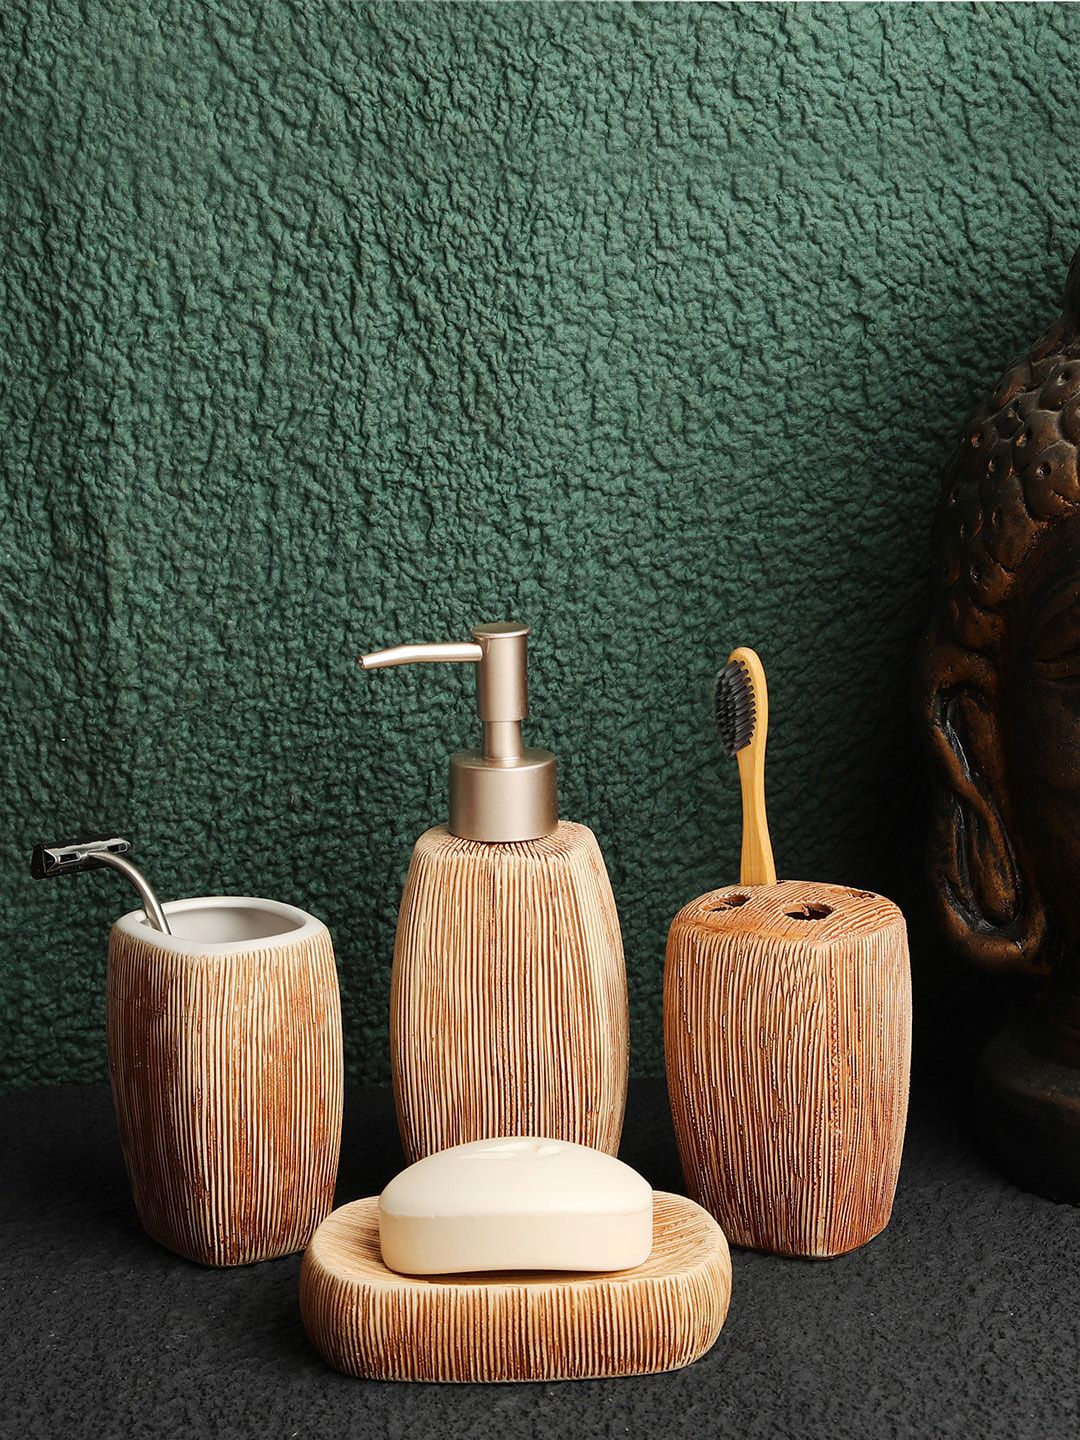 ROMEE Brown Ceramic Bathroom Accessories Set Price in India